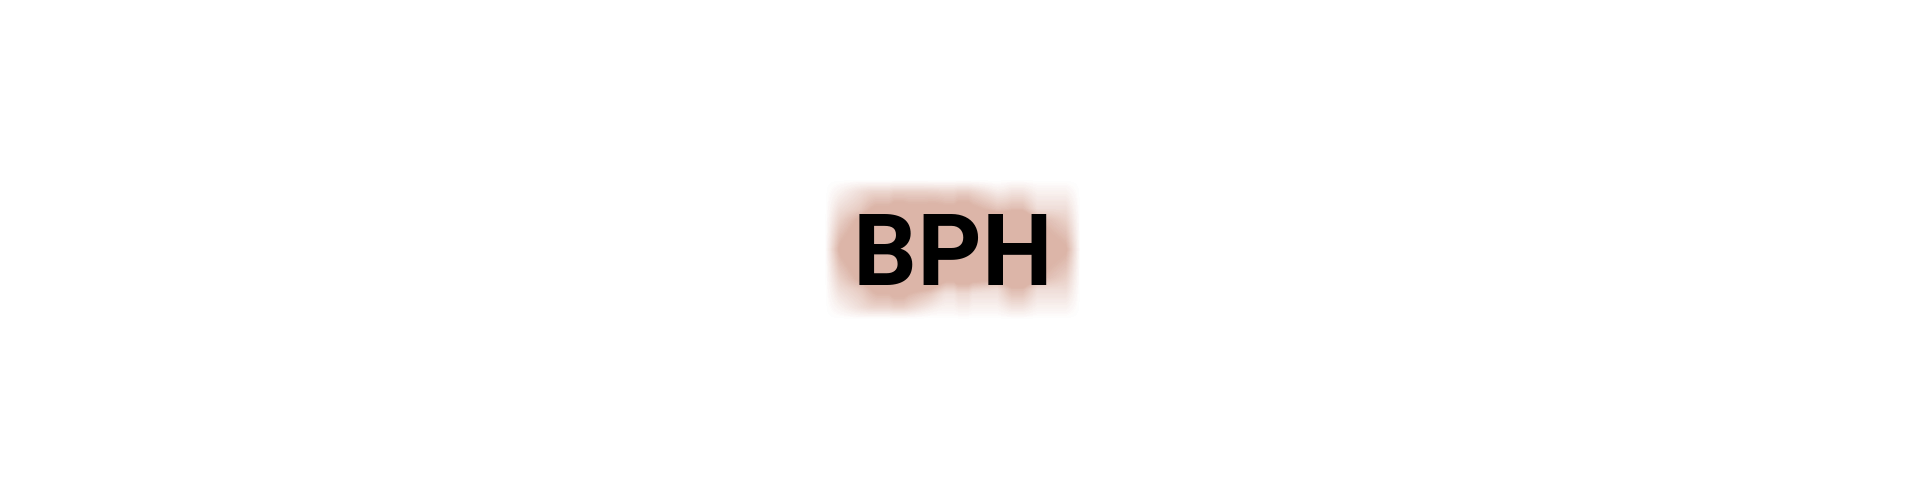 BPH.png